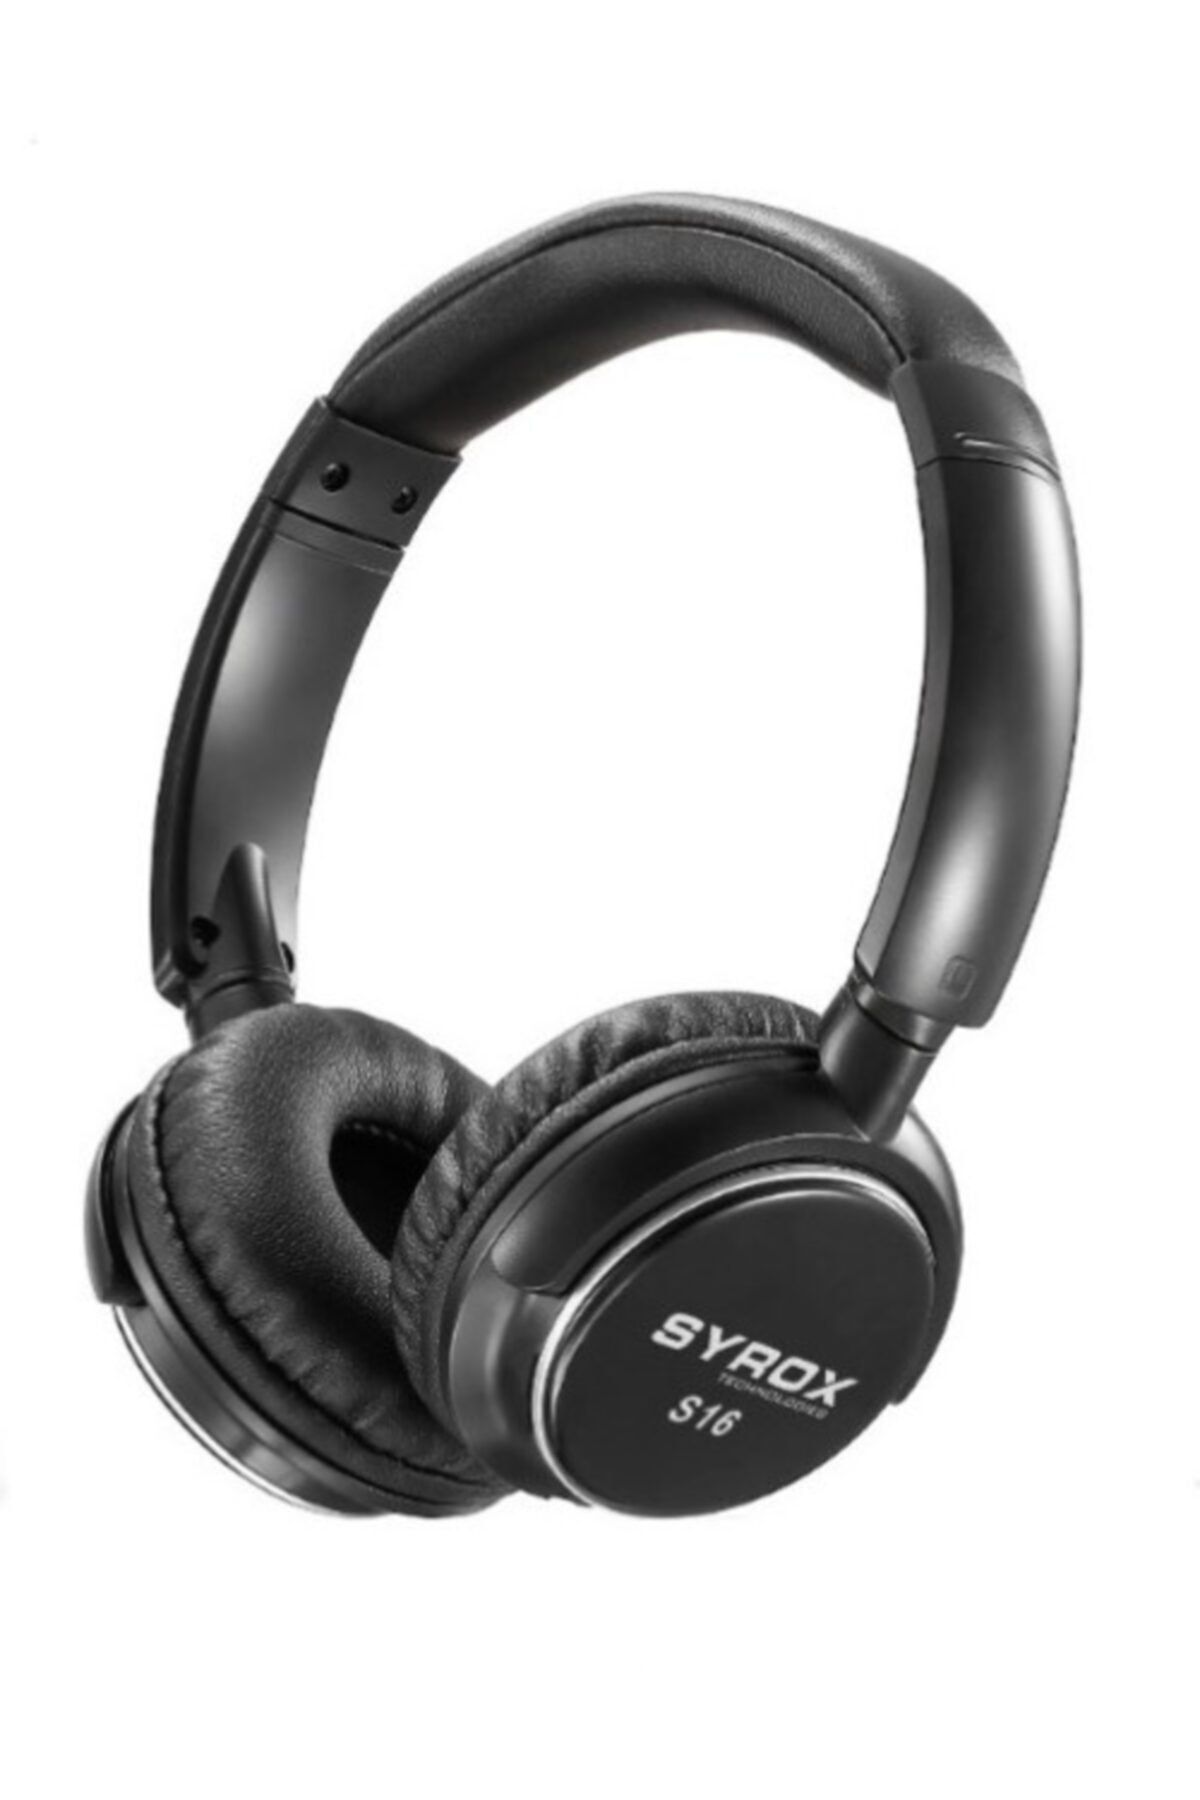 Syrox S16 Kablosuz Hafıza Kartlı Bluetooth Kulaküstü Kulaklık